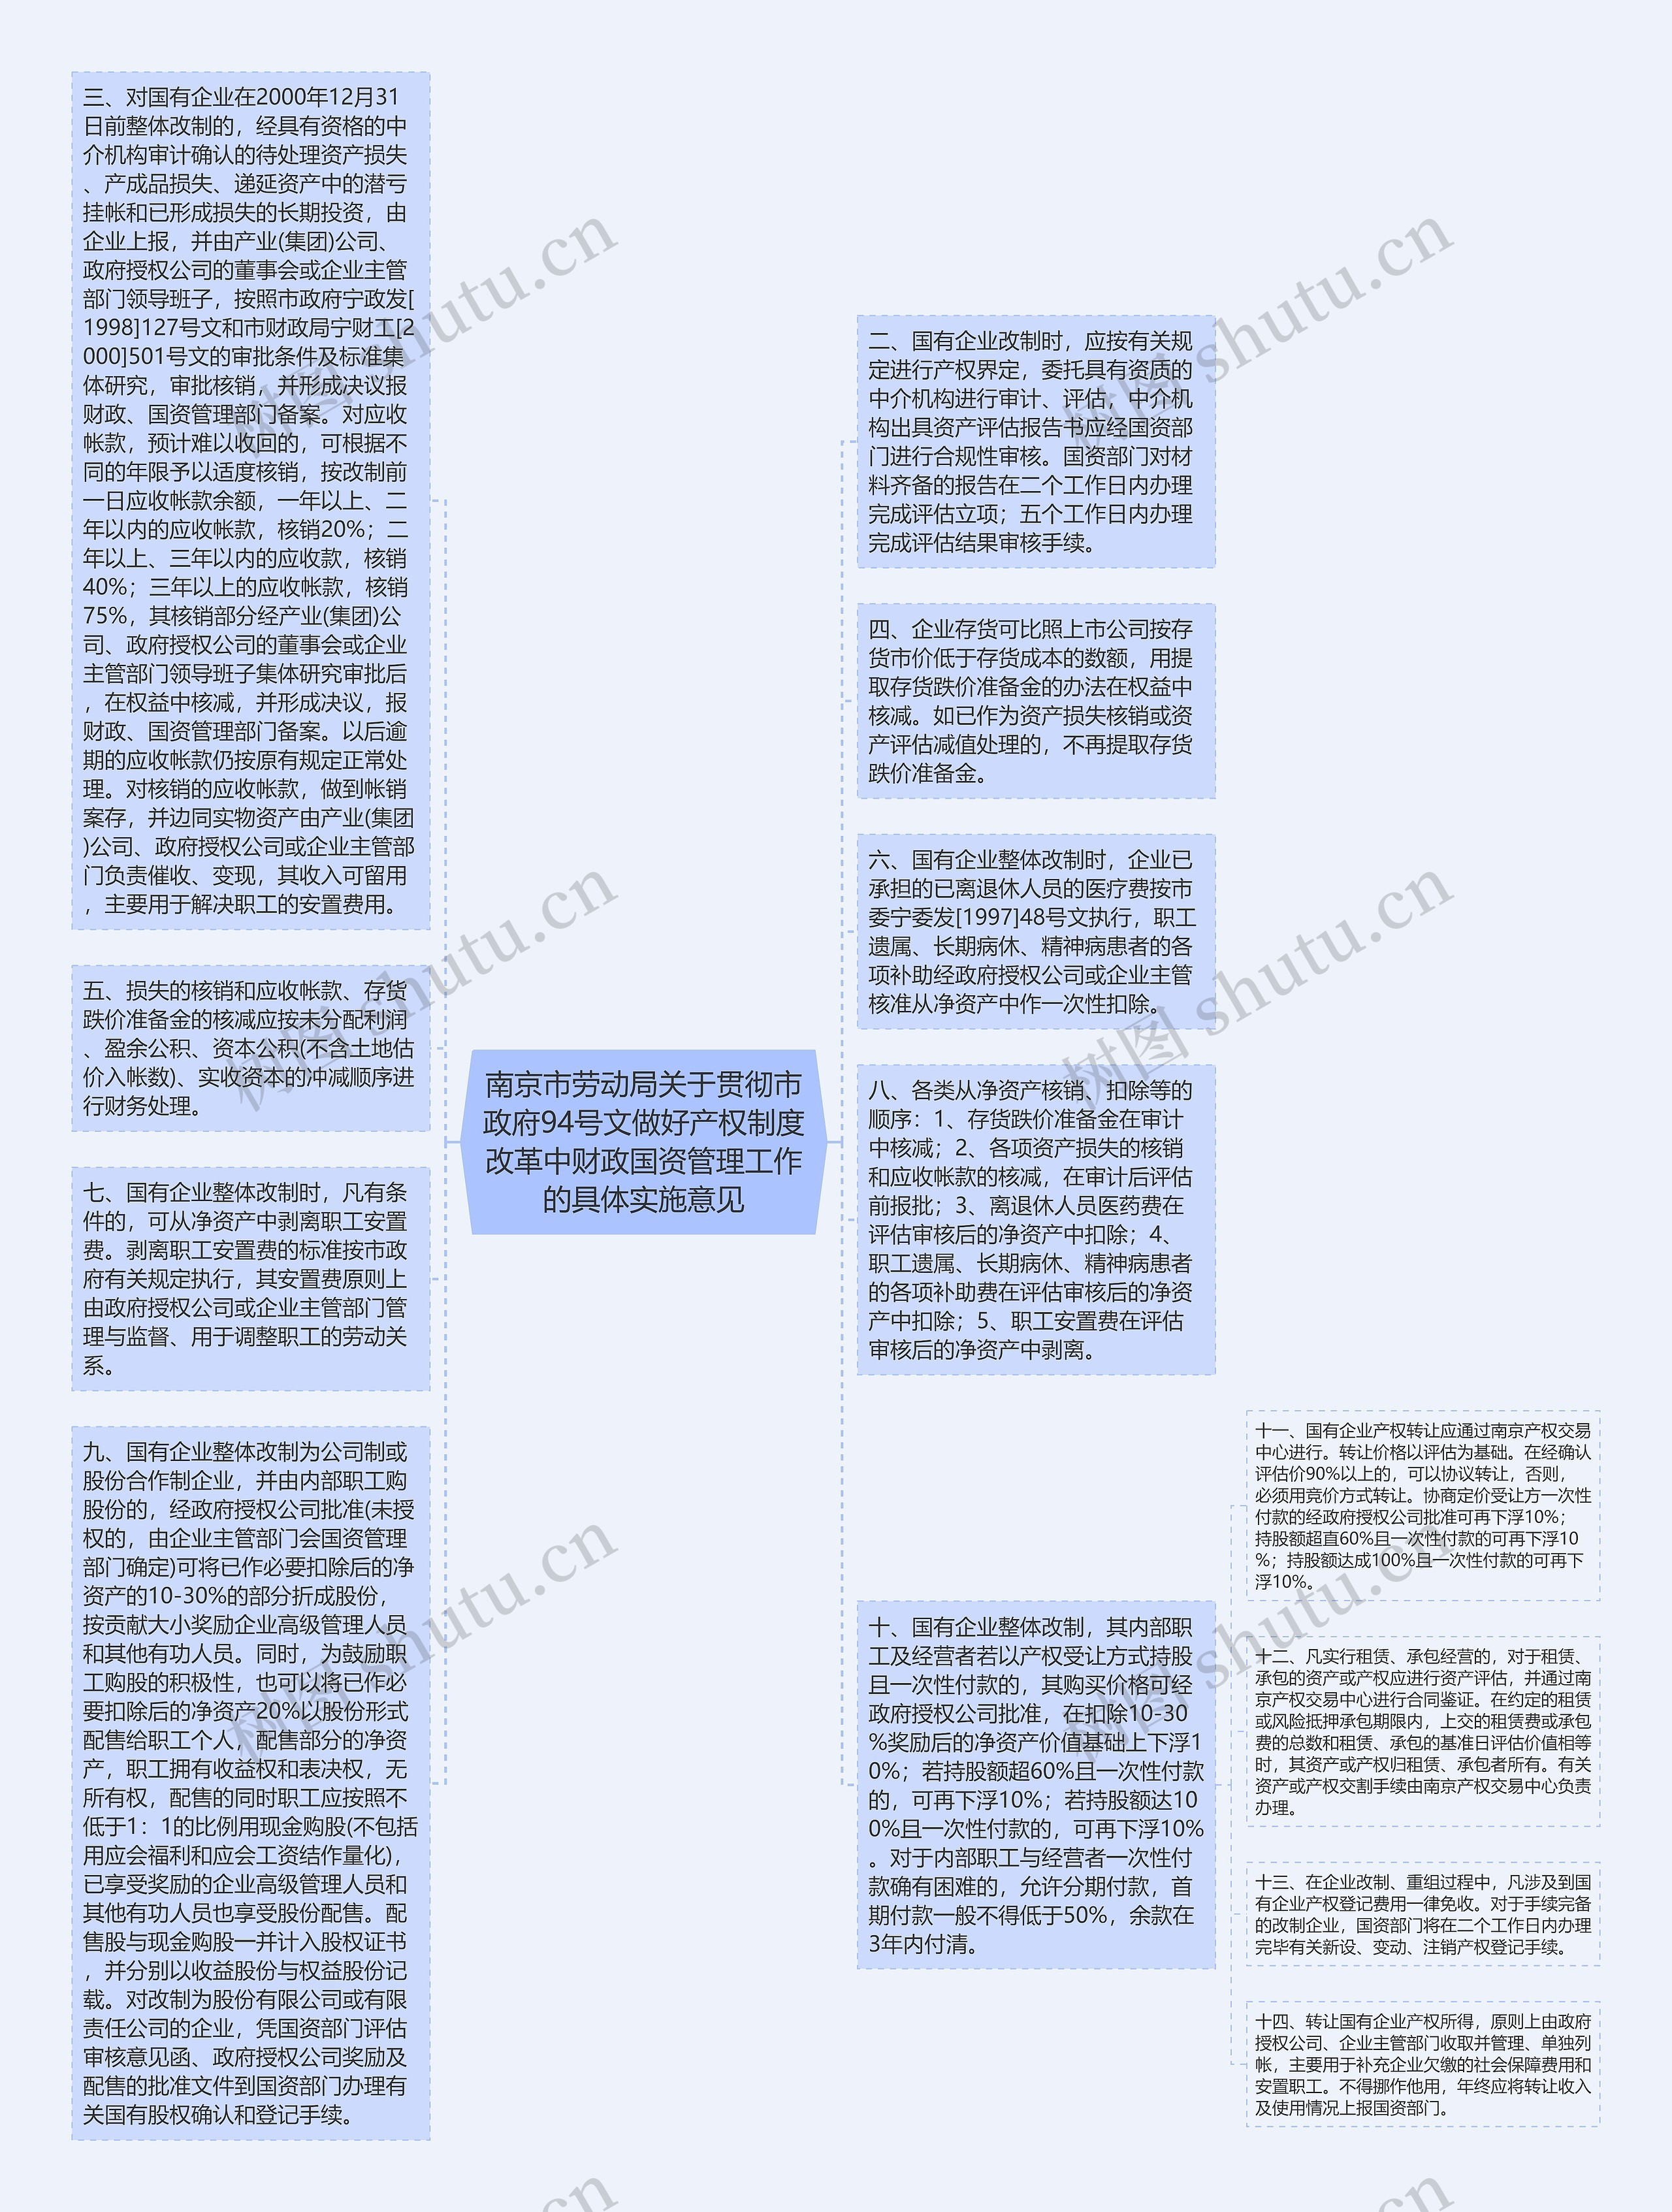 南京市劳动局关于贯彻市政府94号文做好产权制度改革中财政国资管理工作的具体实施意见